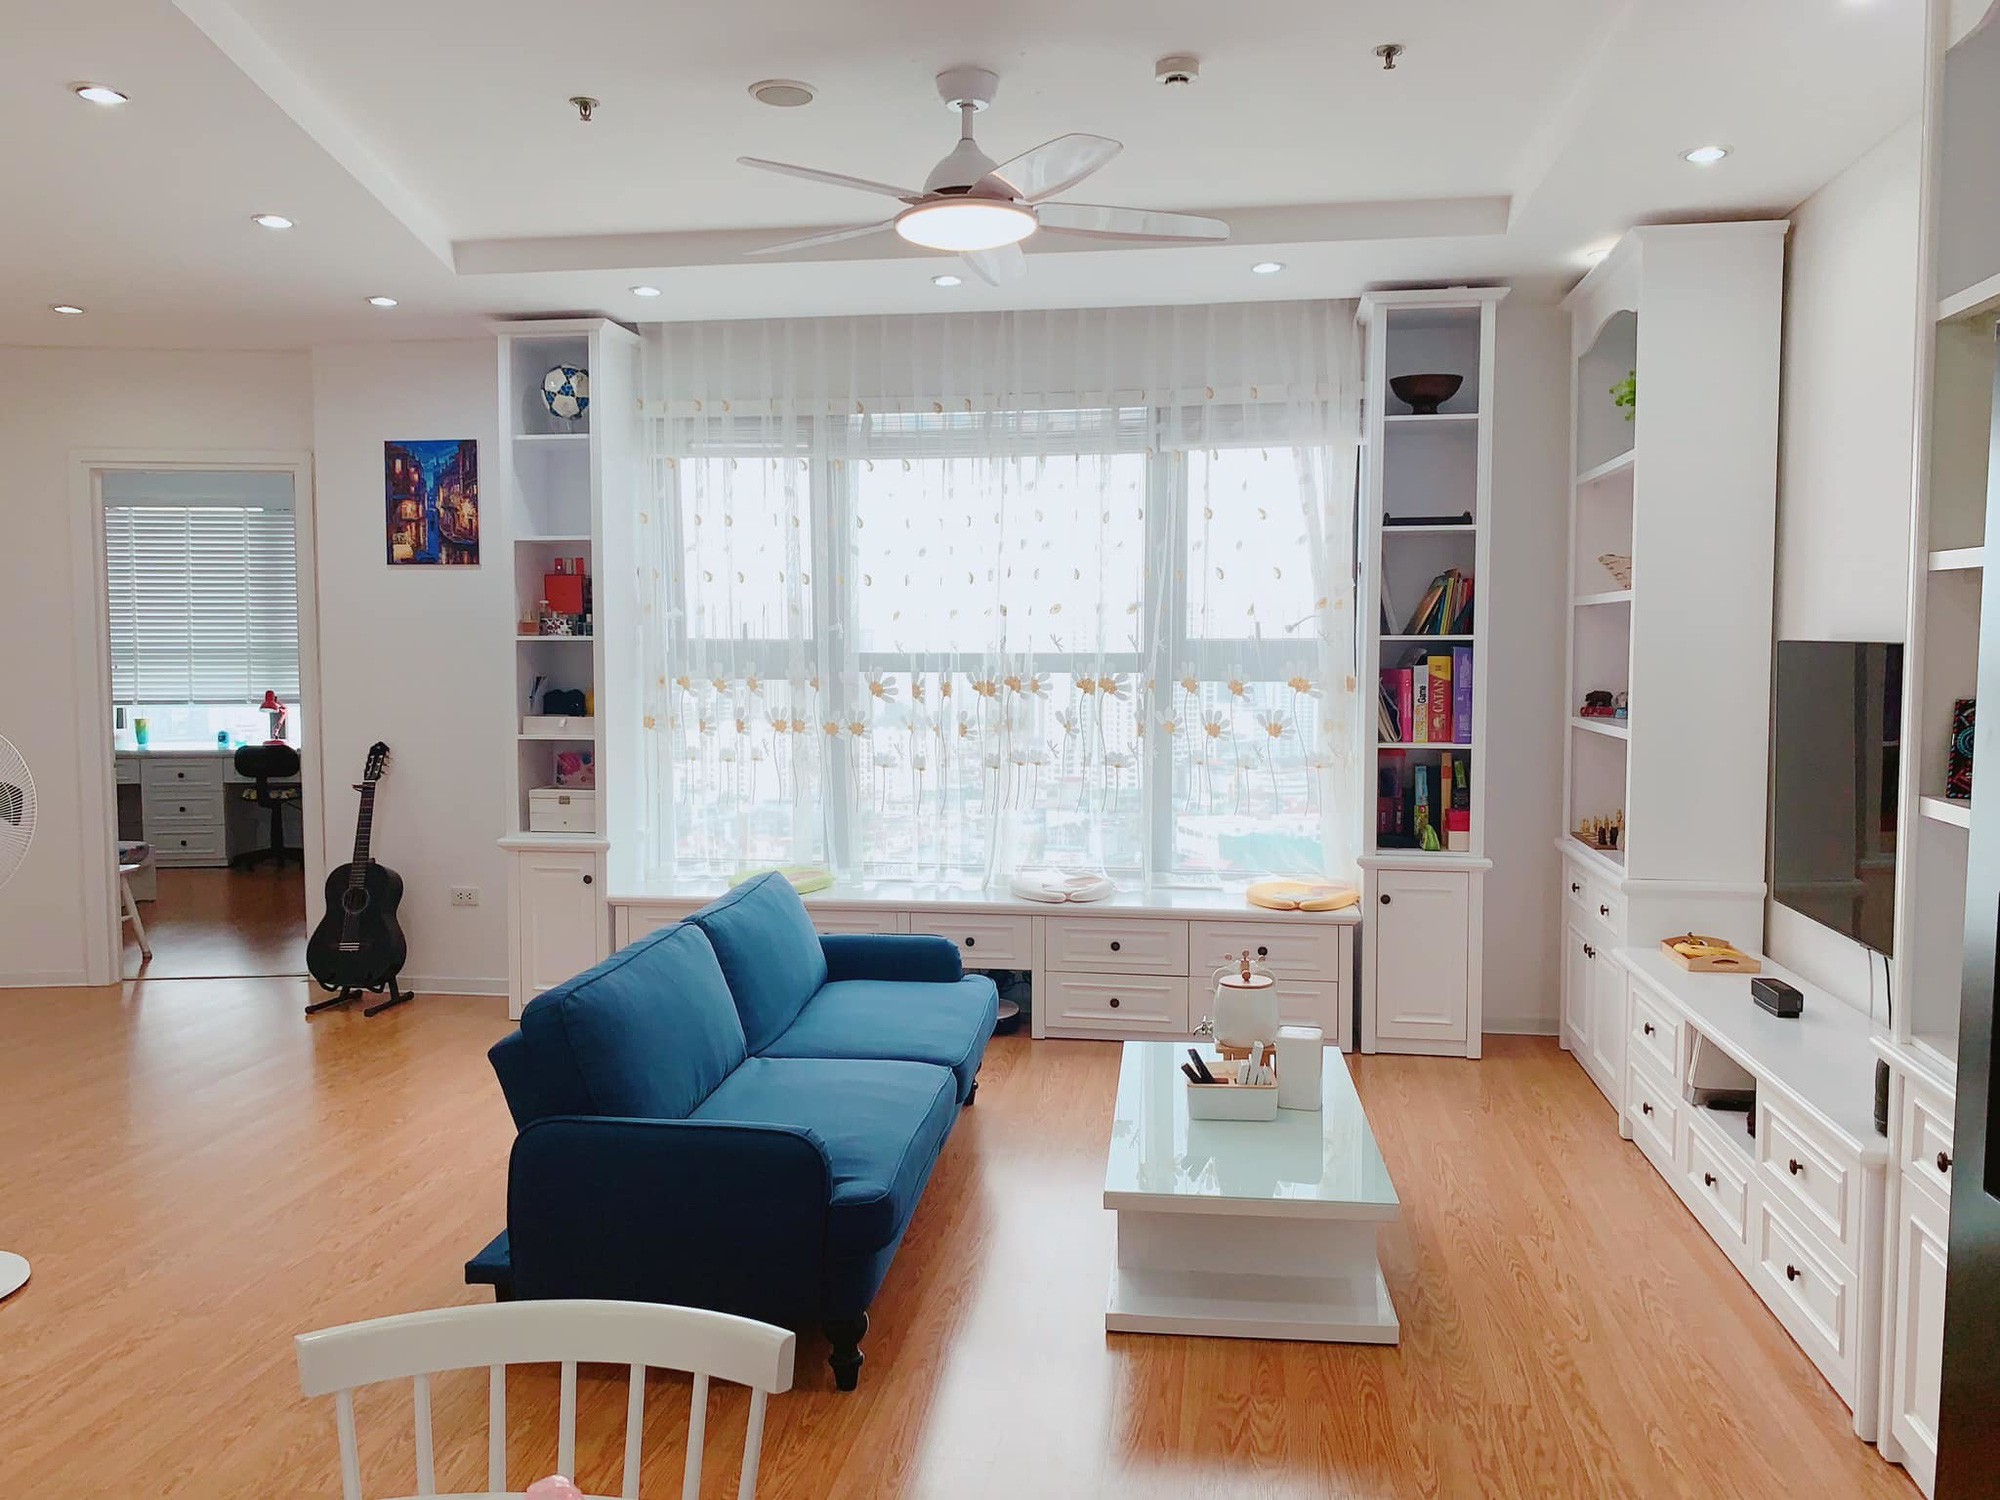 Bà mẹ ở Hà Nội thử thách bản thân, tự thiết kế căn hộ chung cư đẹp mỹ mãn - Ảnh 4.